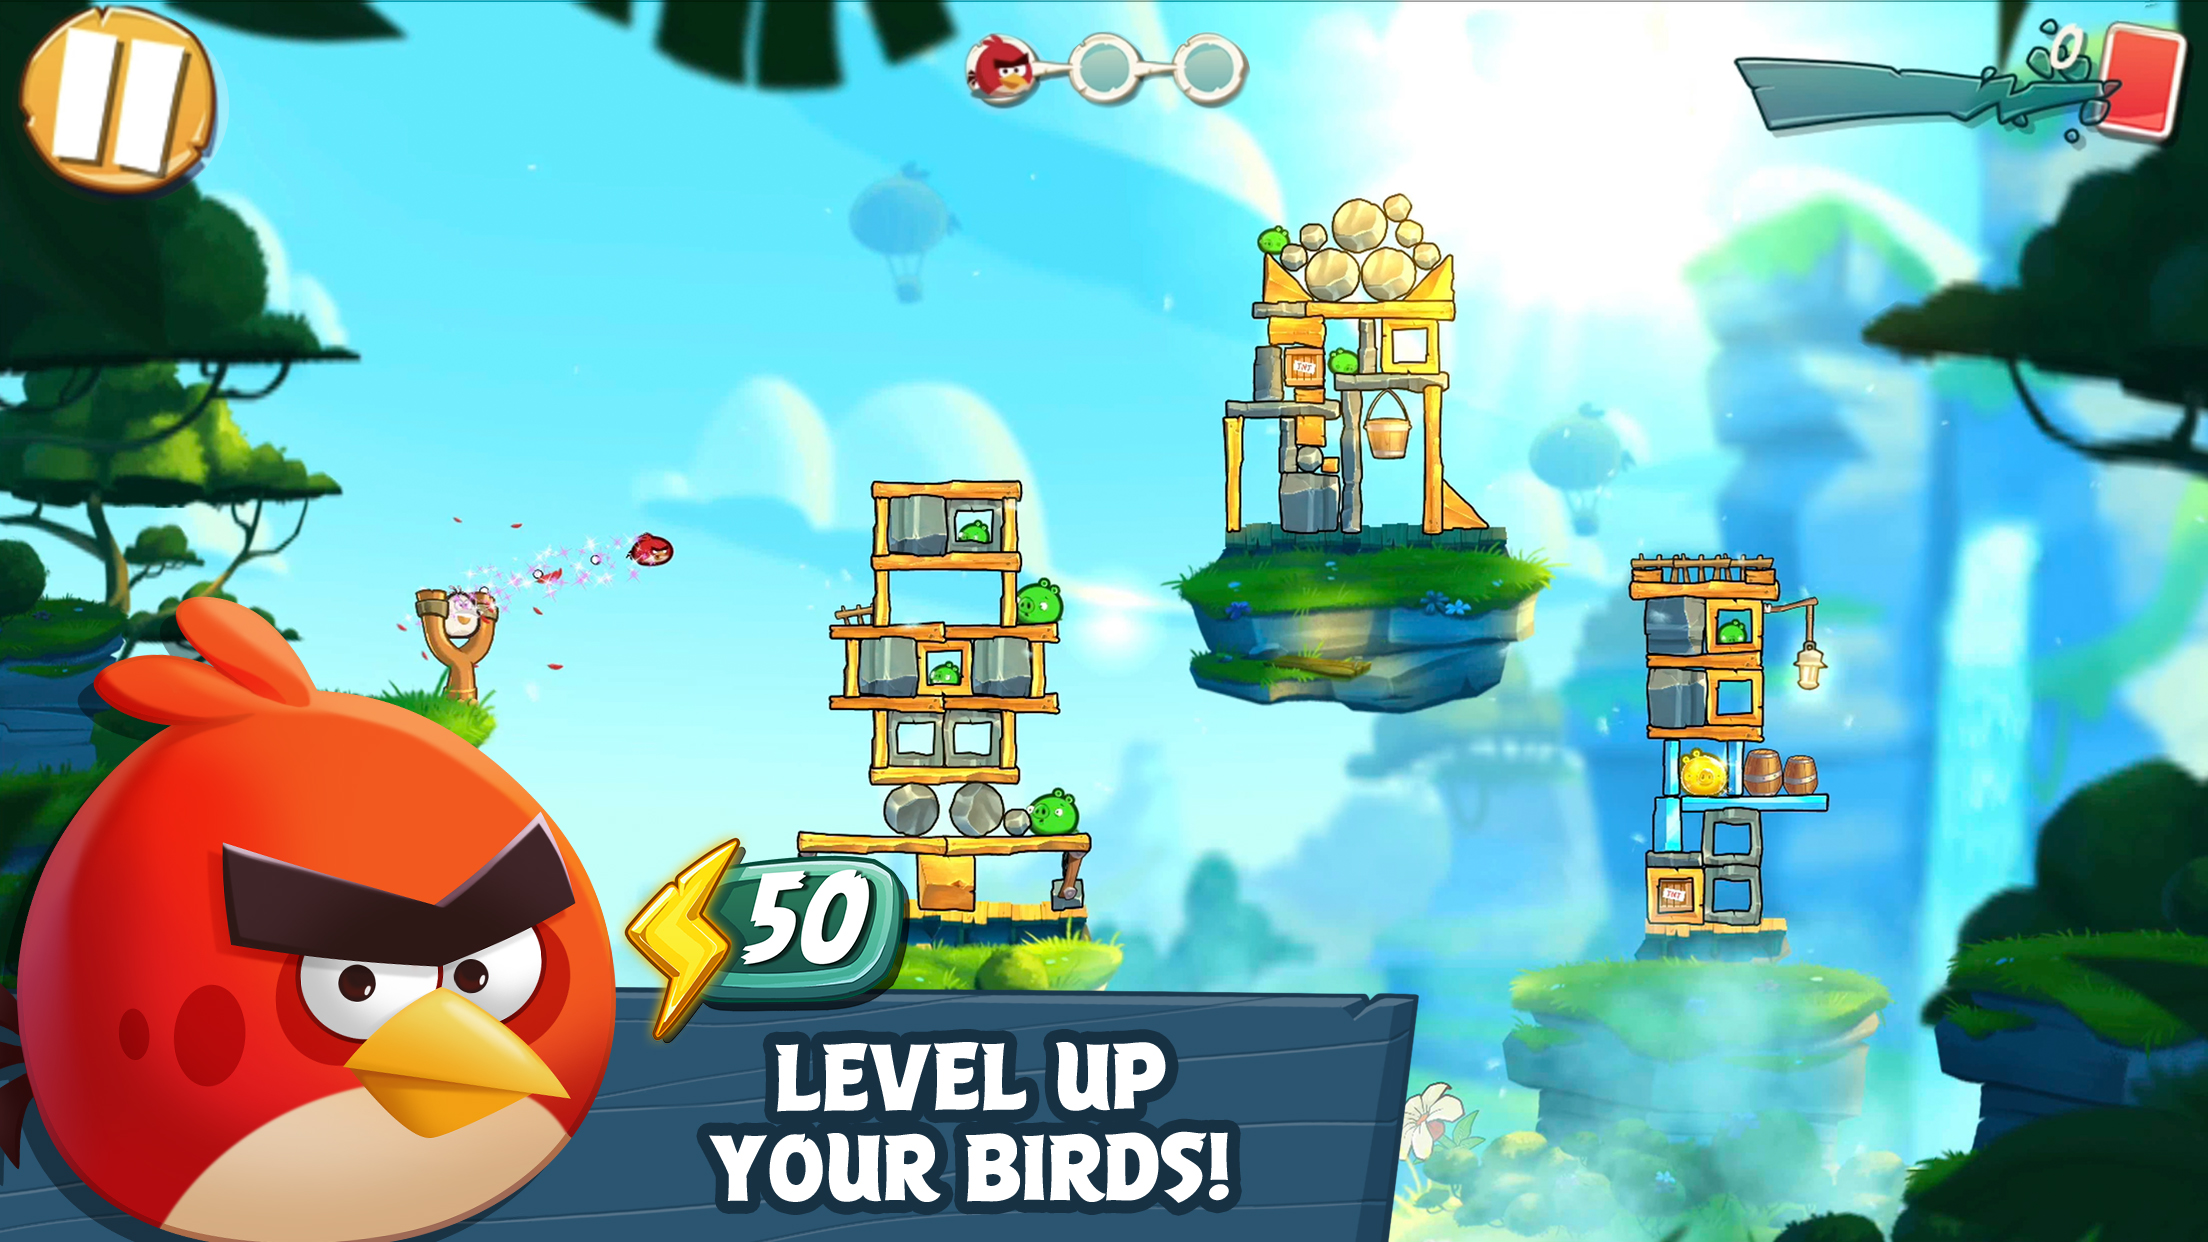 دانلود Angry Birds 2 3.15.4 – آپدیت بازی “انگری برد 2” اندروید